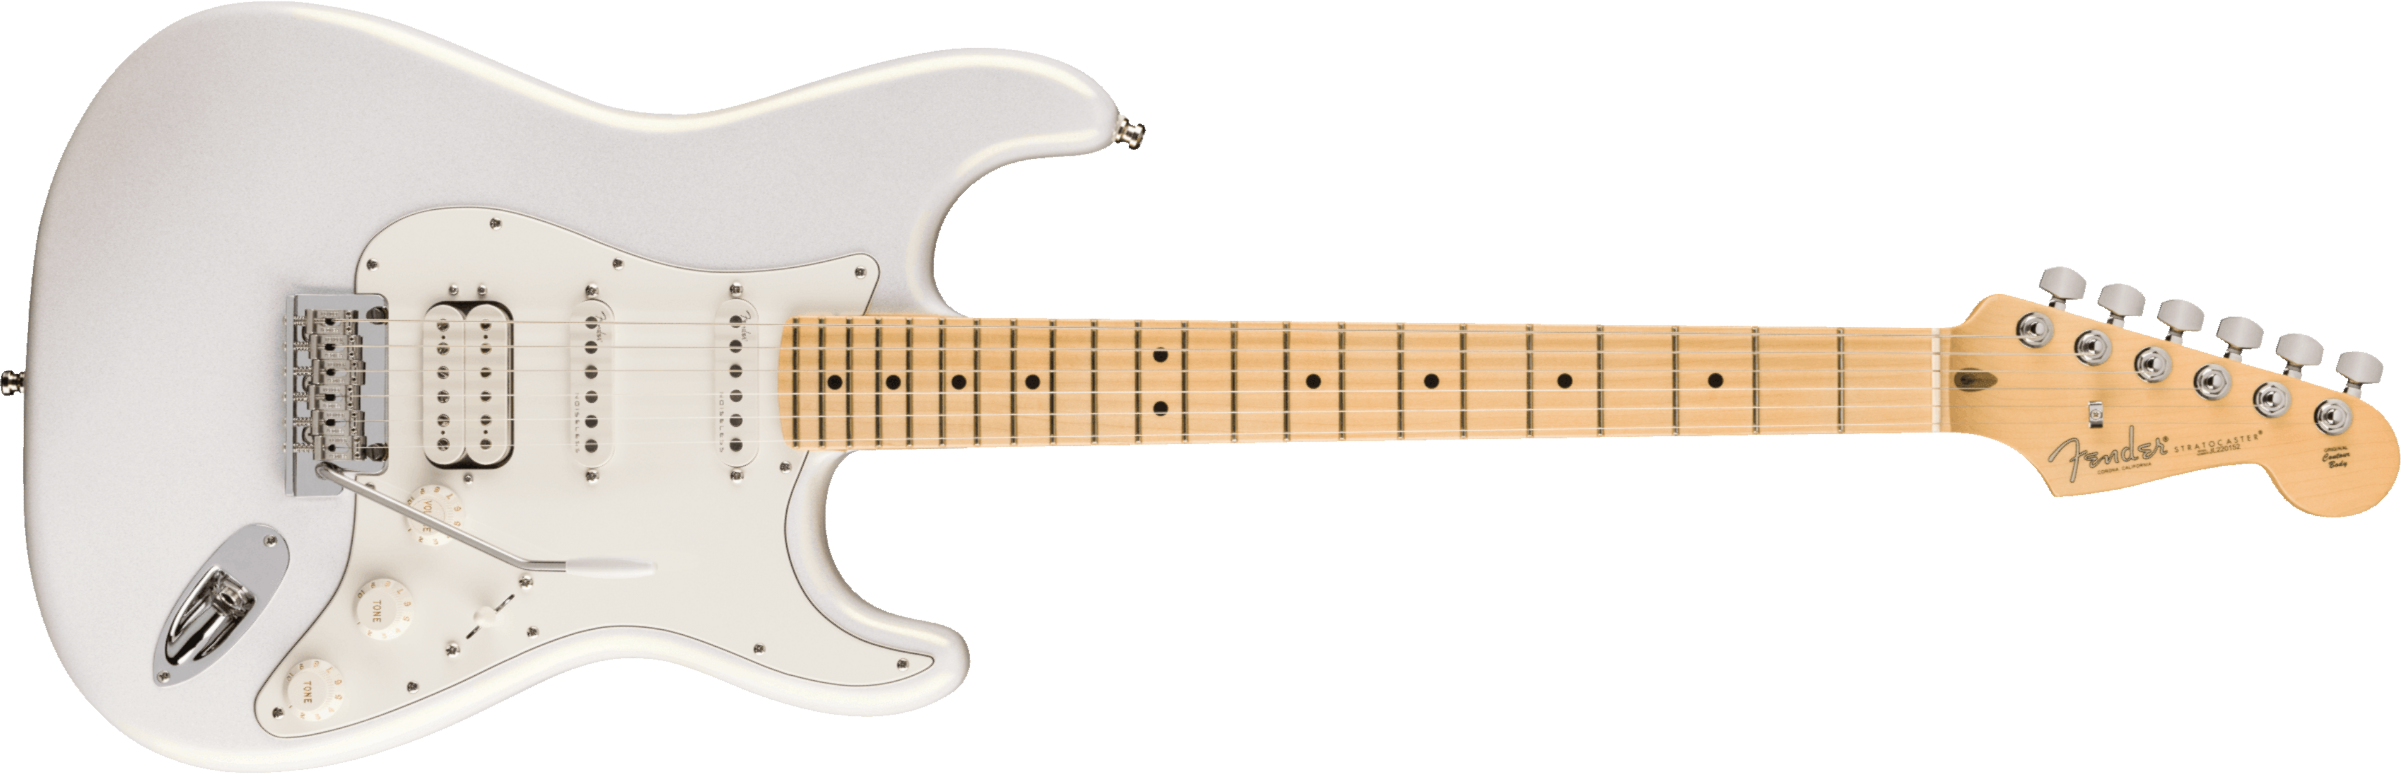 Fender Juanes Strat Trem Hss Mn - Luna White - Elektrische gitaar in Str-vorm - Main picture